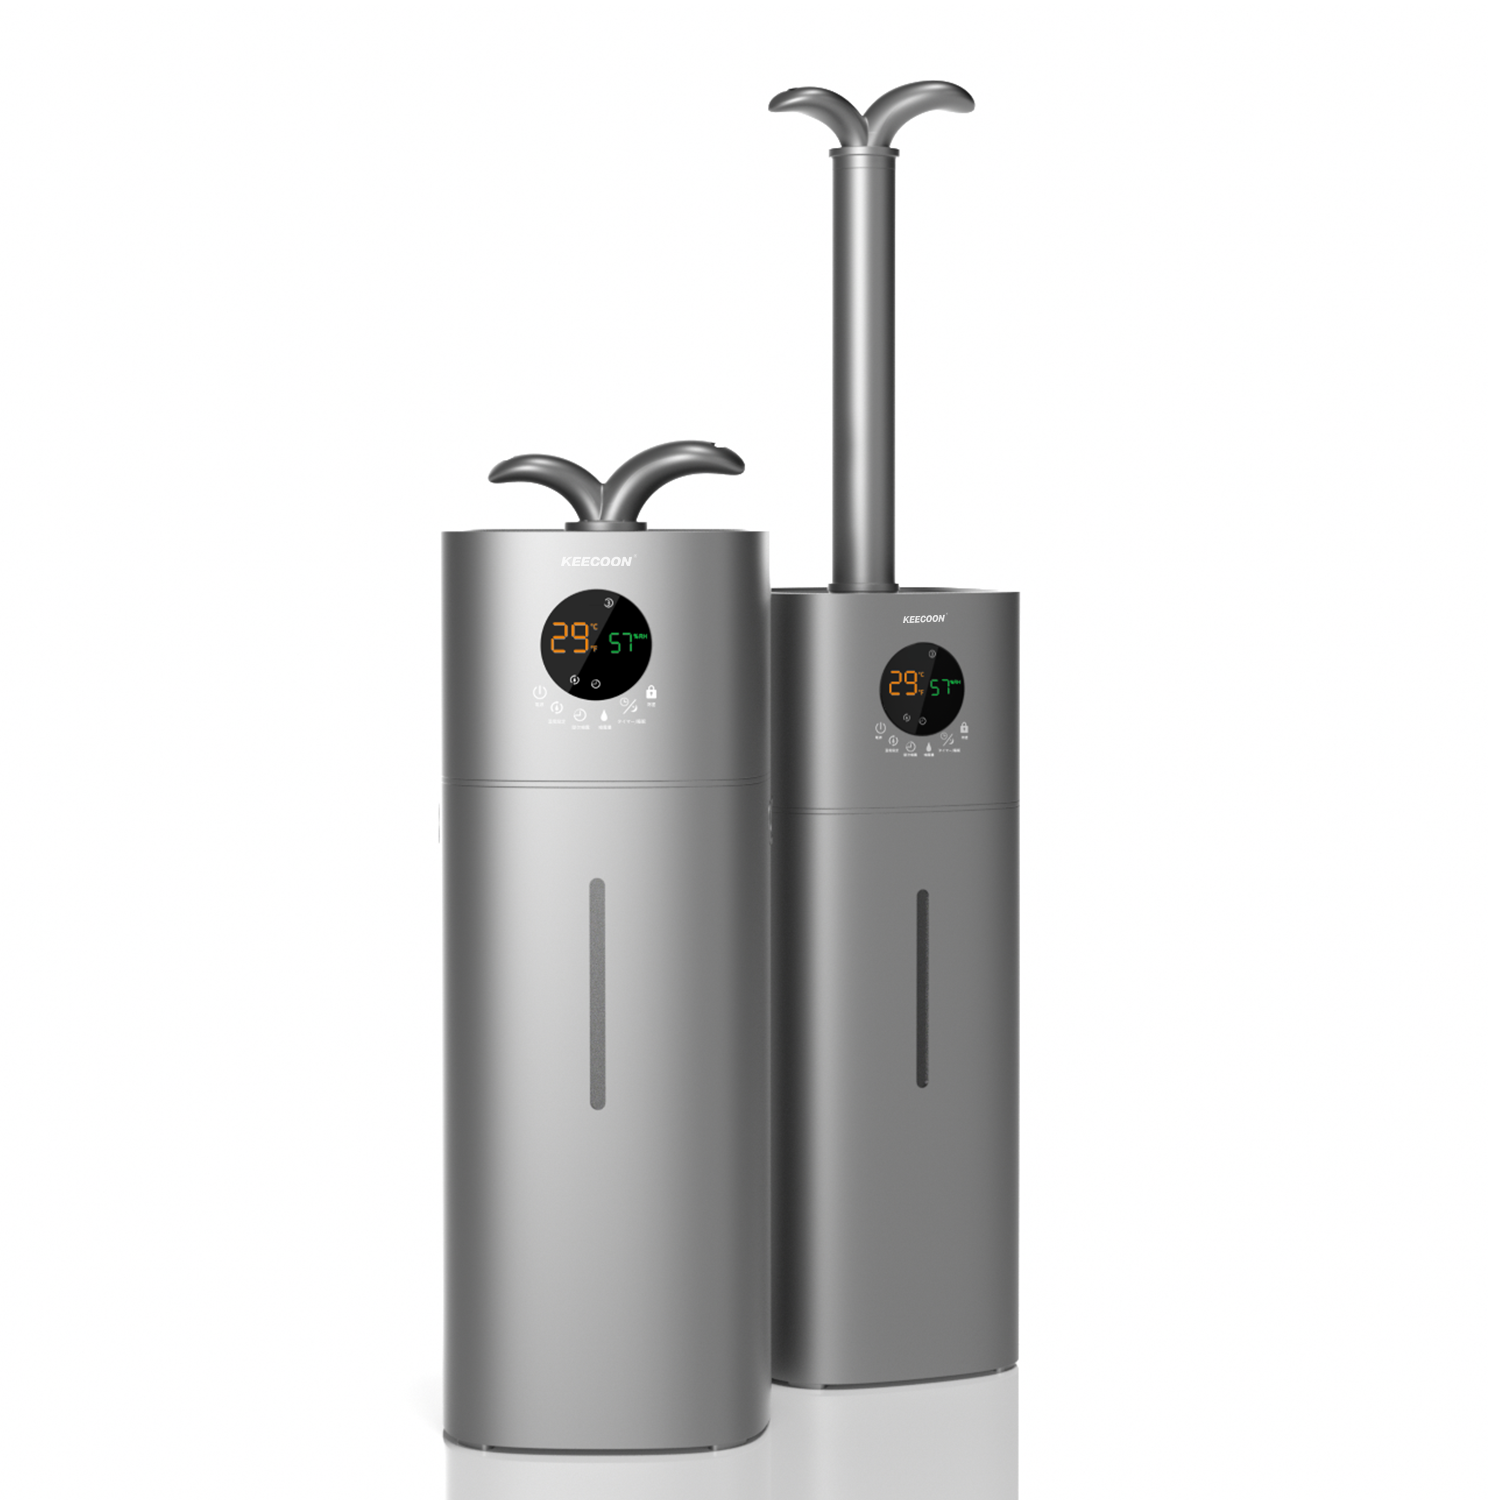 KEECOON 加湿器 大容量 業務用 家庭用 17Lタワー式 超音波加湿器 ...